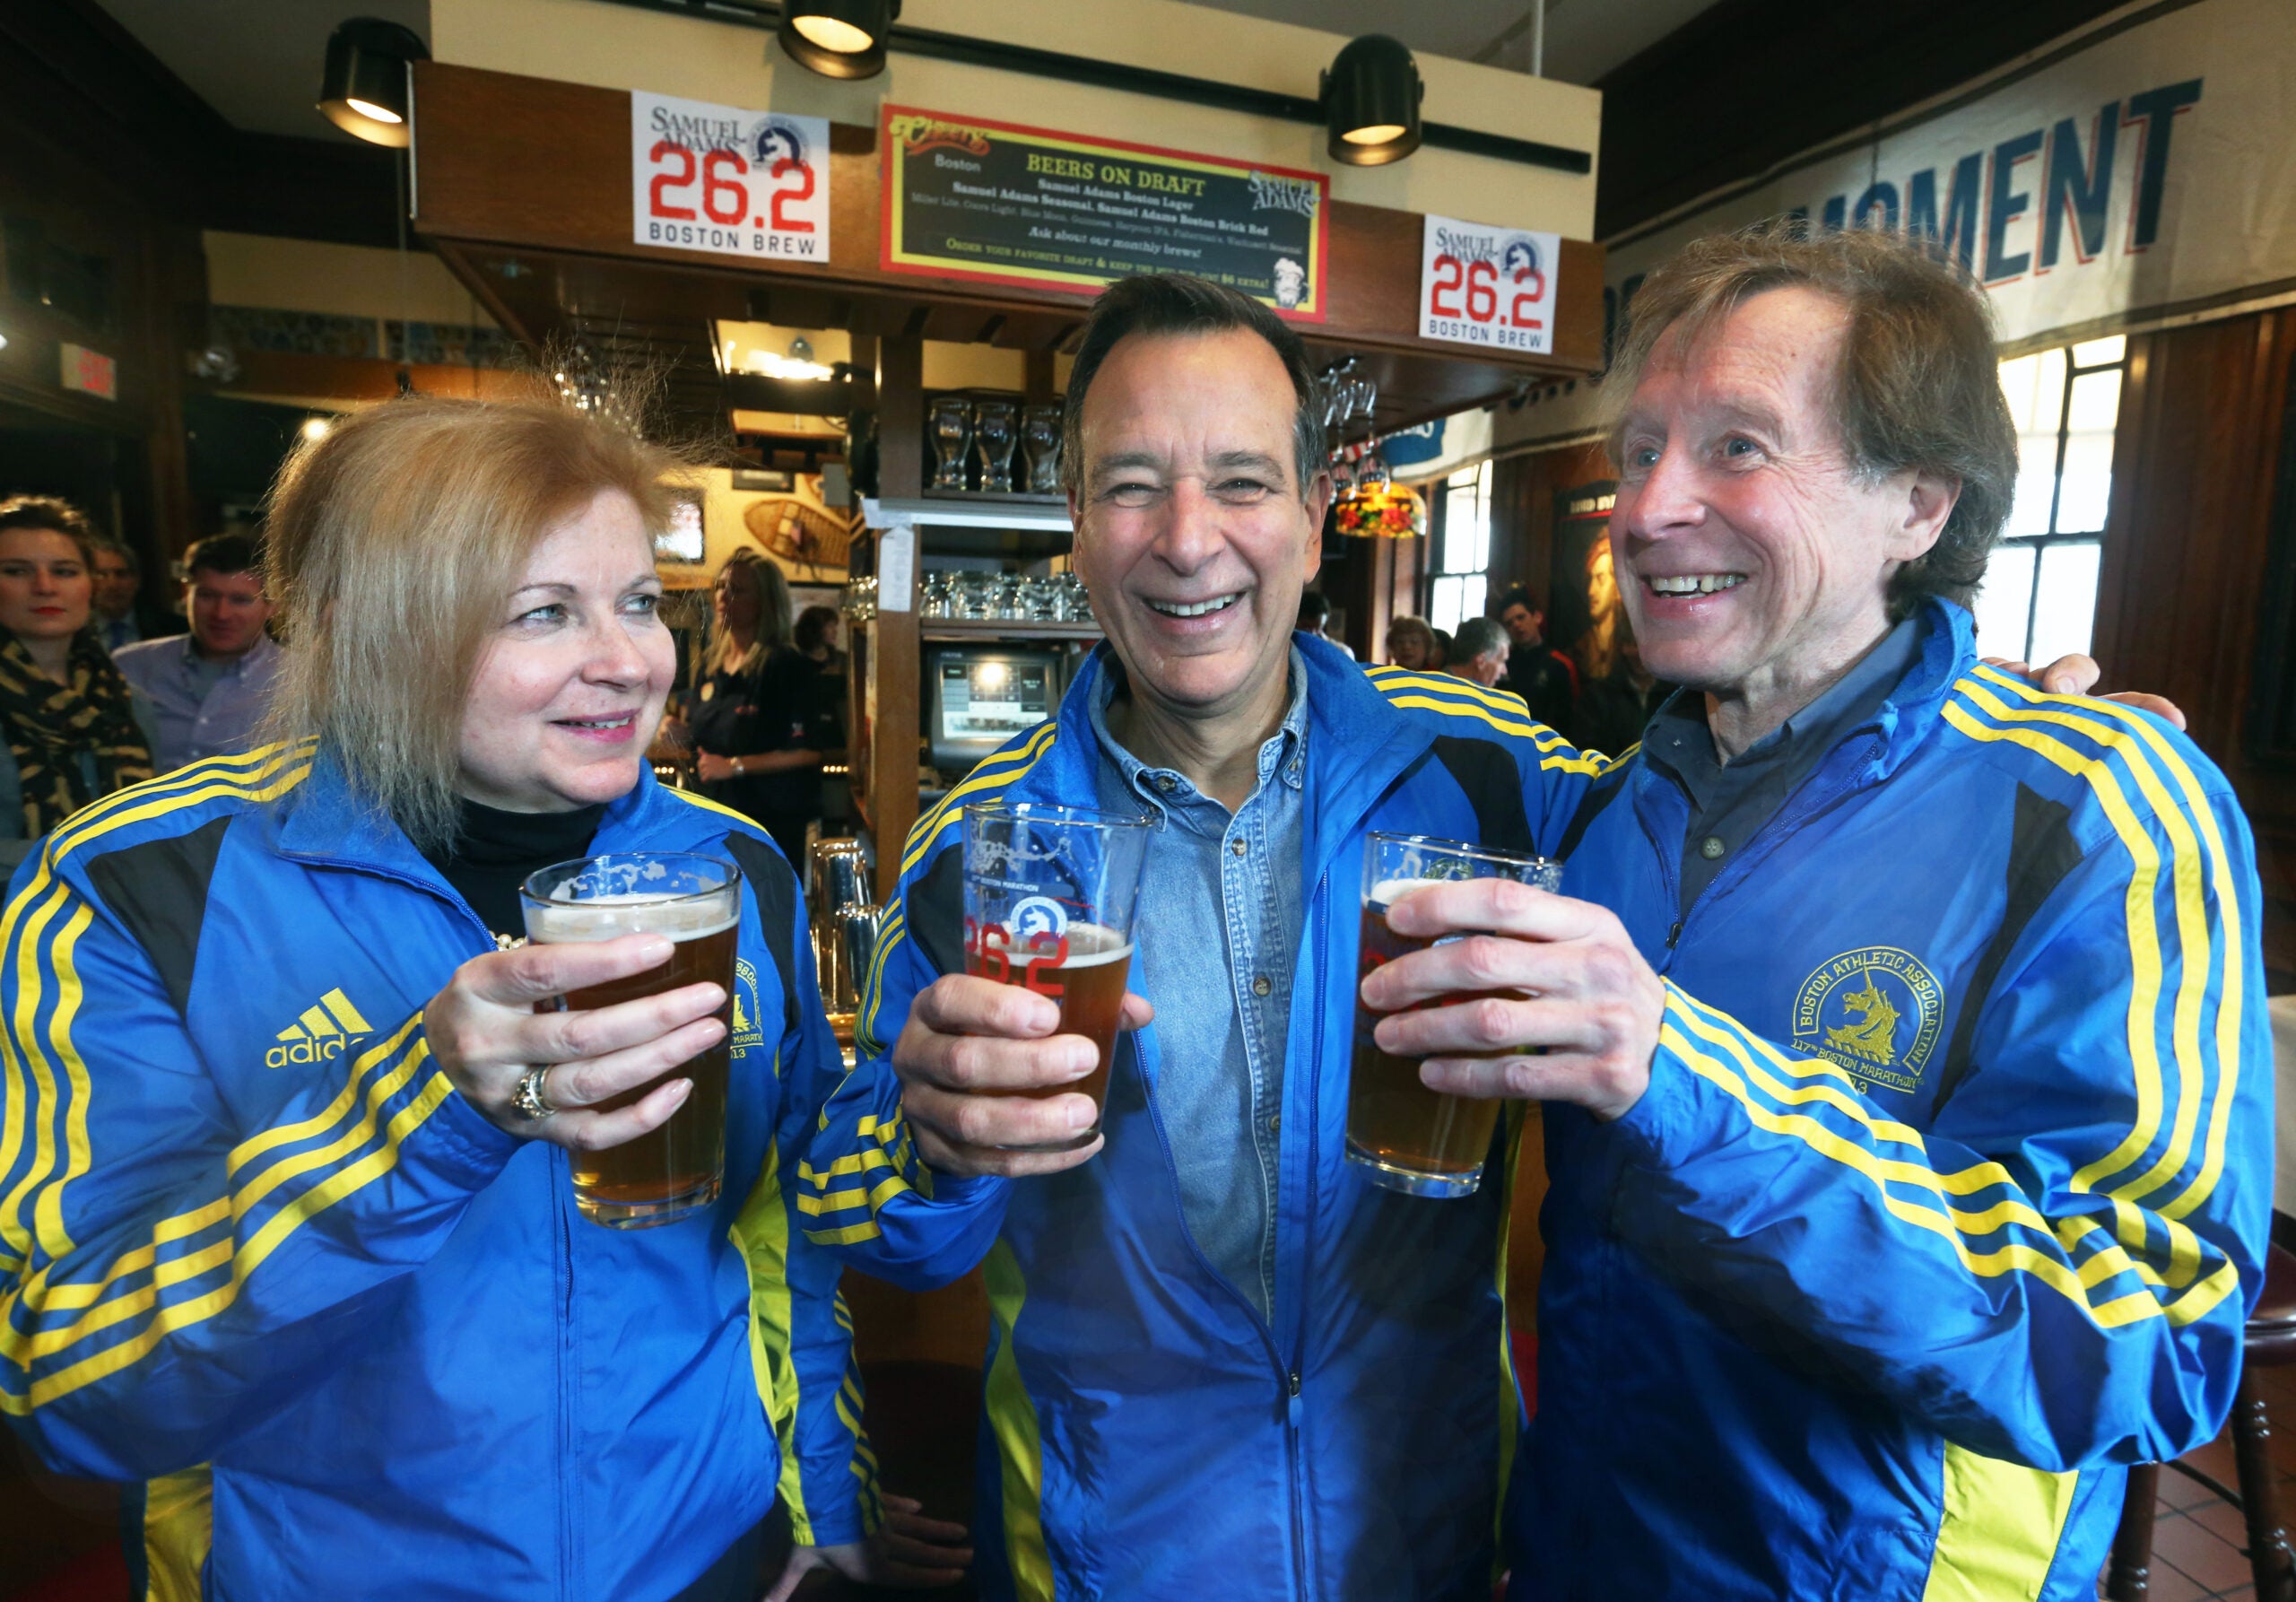 Samuel Adams's 26.2 Brew is sold each year around the Boston Marathon.